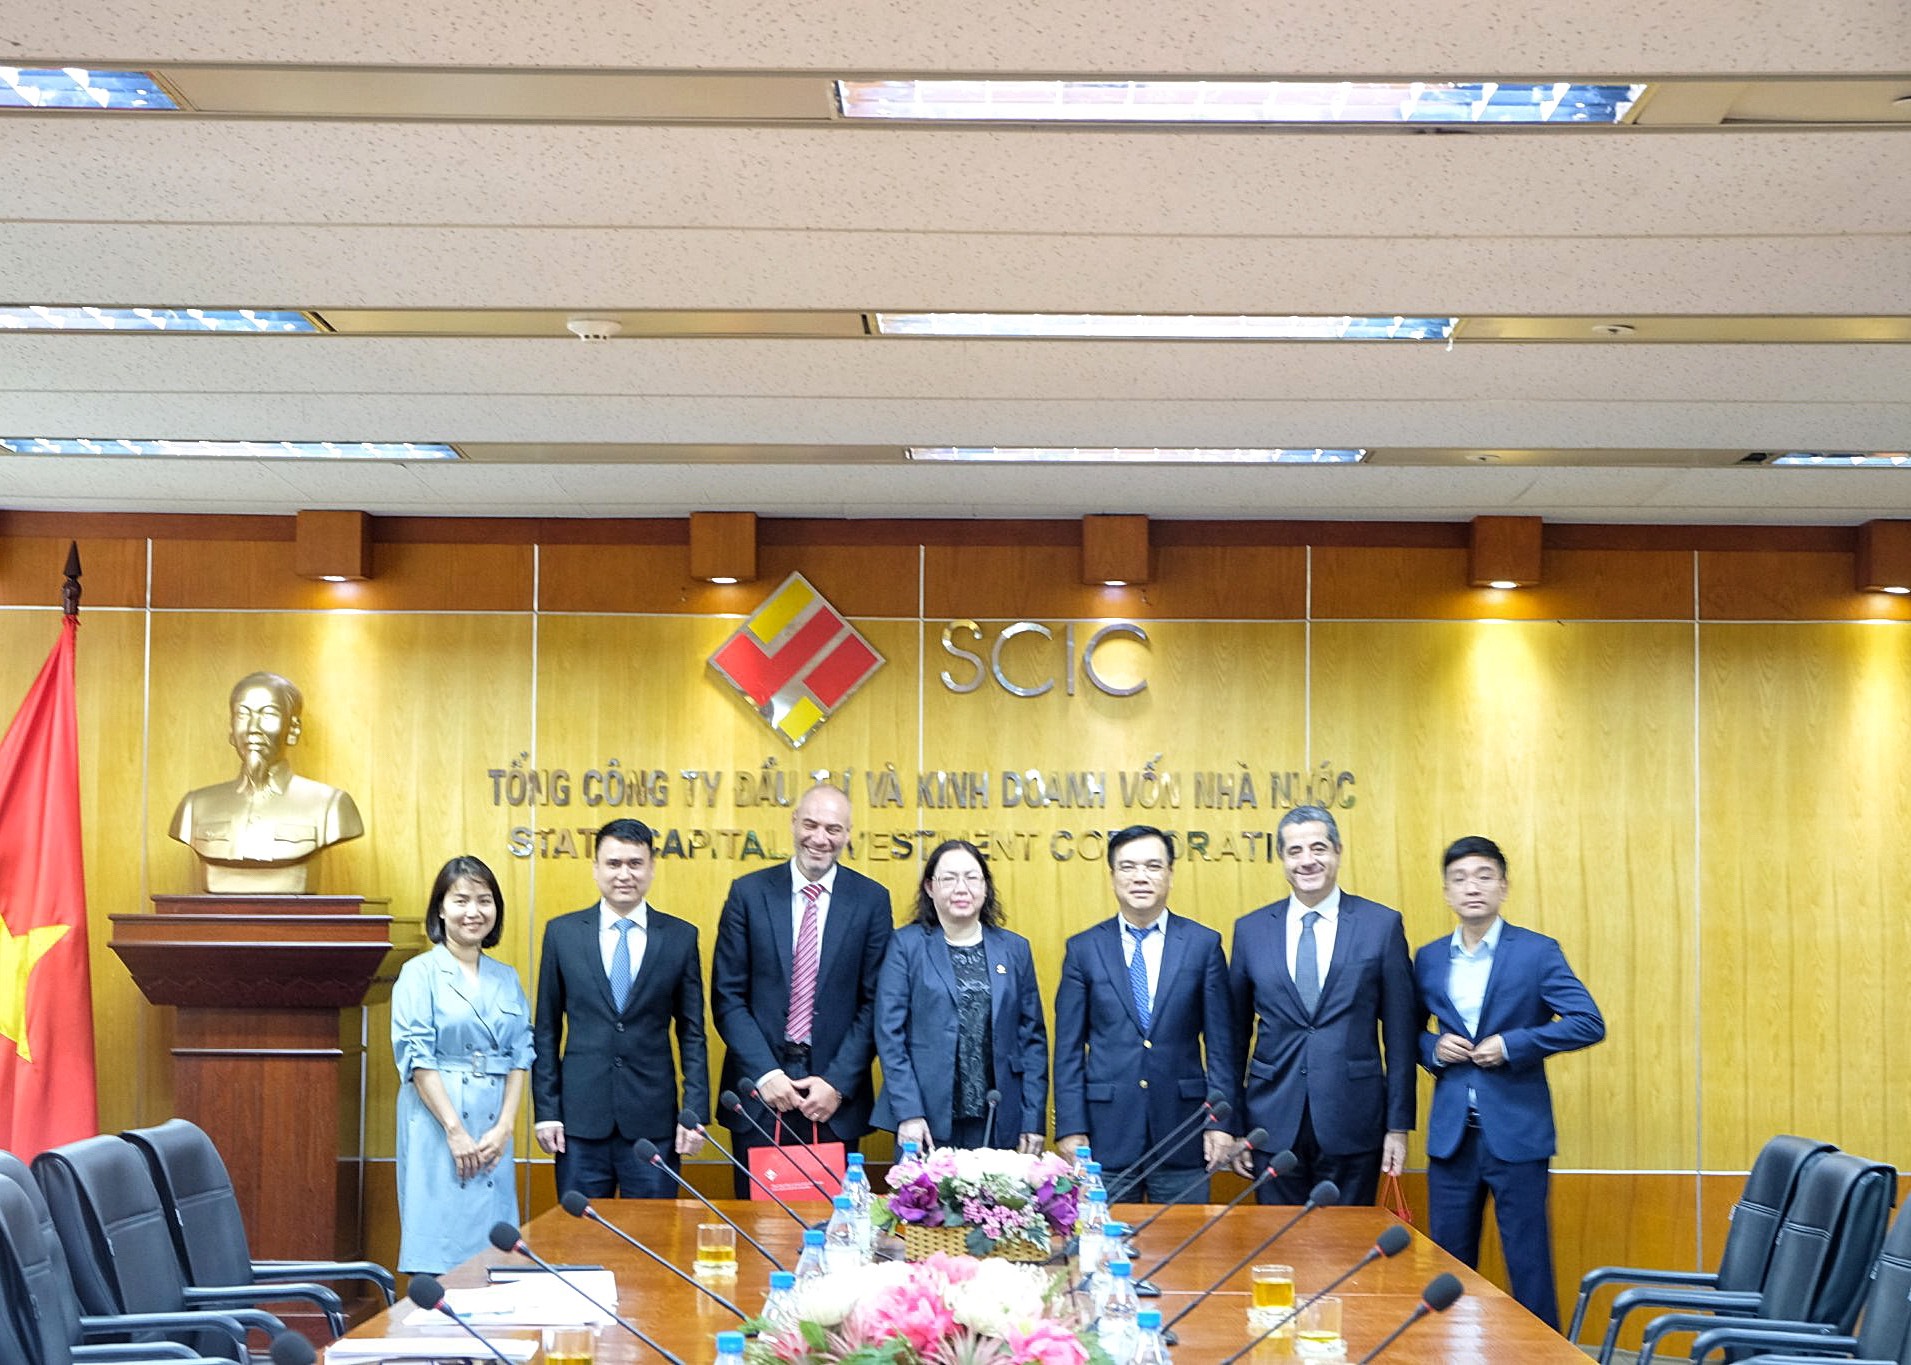 Chủ tịch Hội đồng thành viên SCIC Nguyễn Chí Thành tiếp và làm việc với đoàn công tác của Tập đoàn Abbott